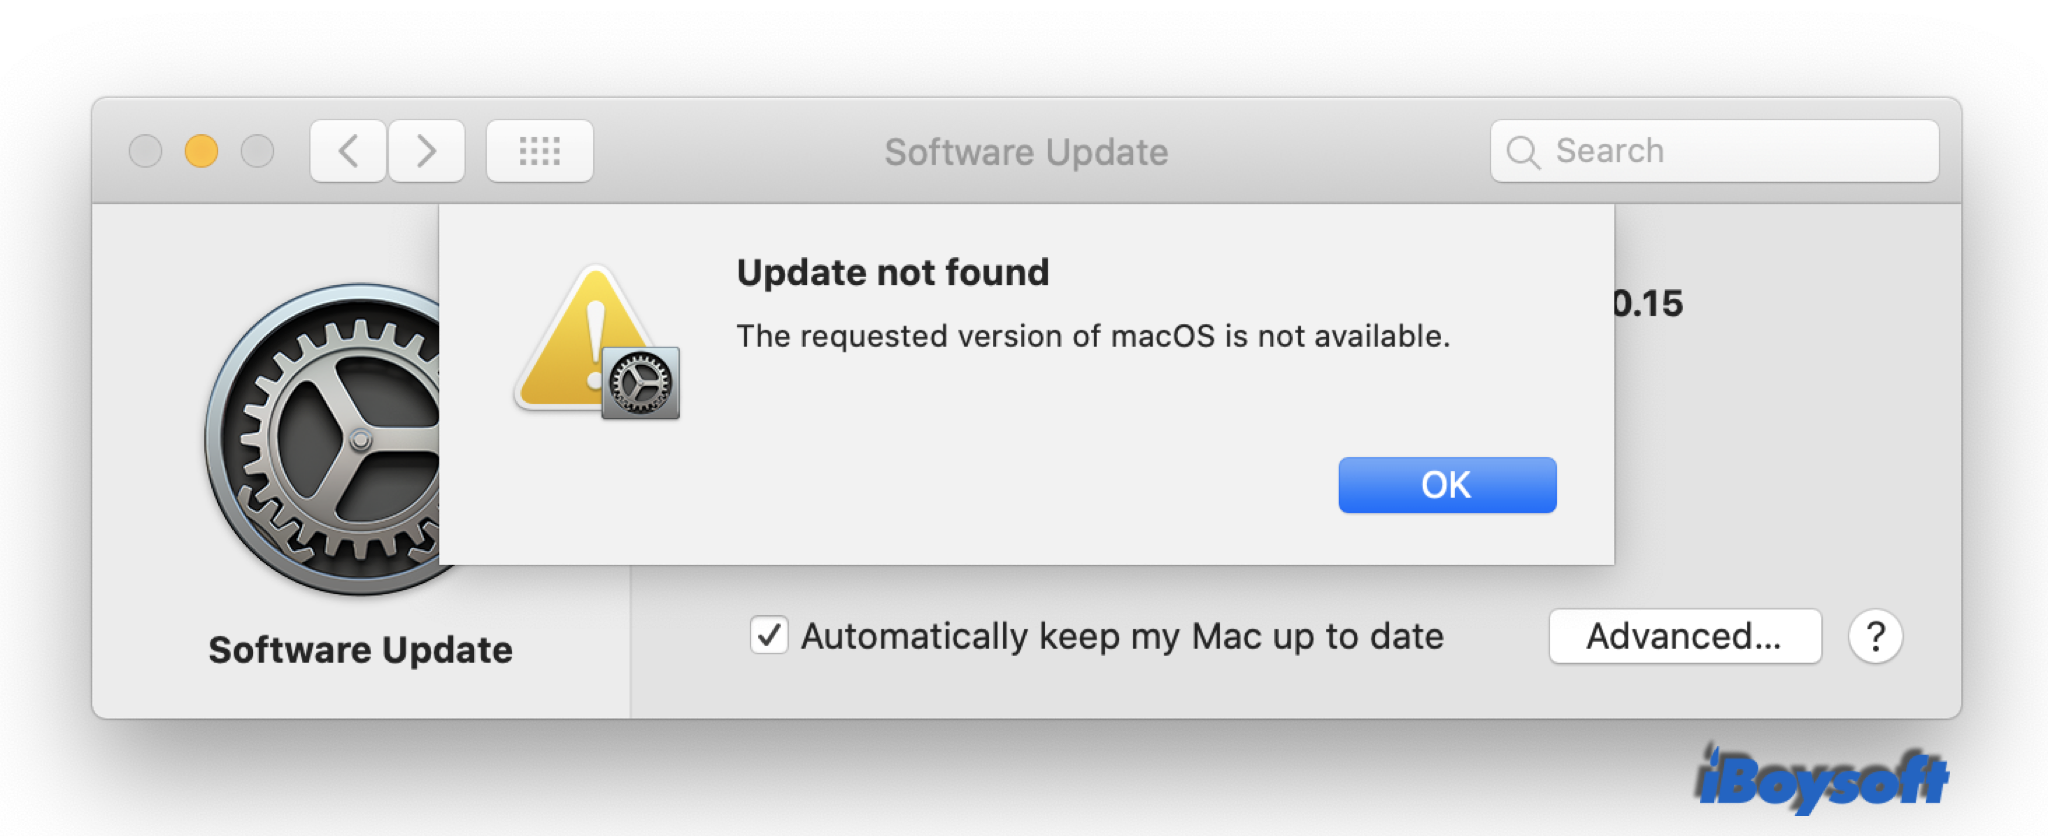 A versão do macOS solicitada não está disponível